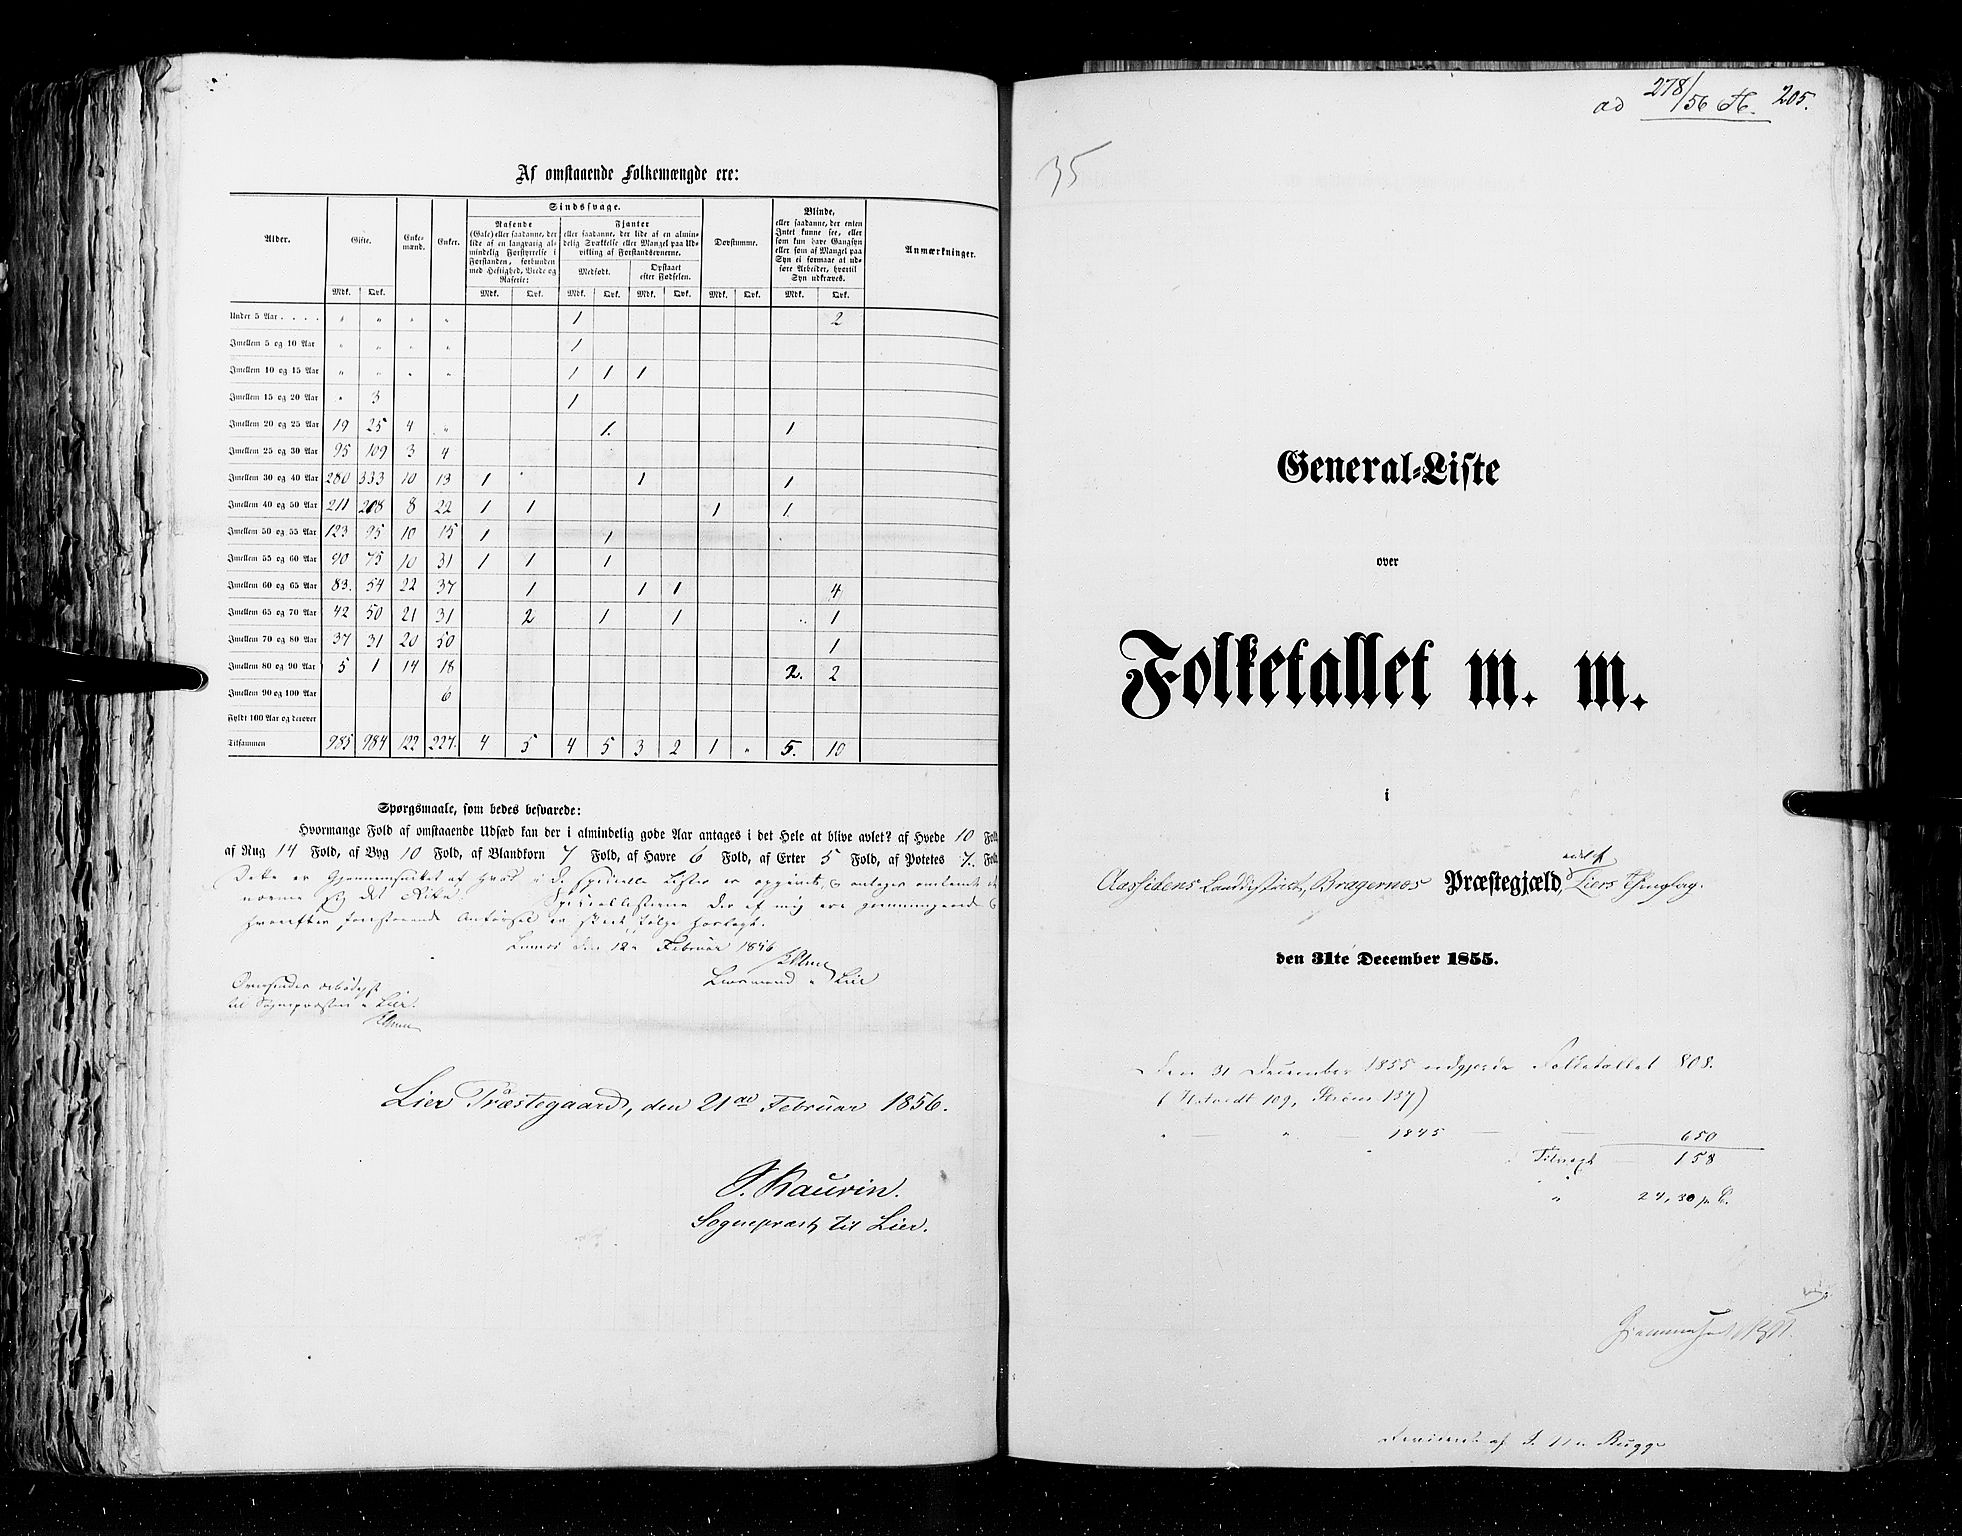 RA, Census 1855, vol. 2: Kristians amt, Buskerud amt og Jarlsberg og Larvik amt, 1855, p. 205